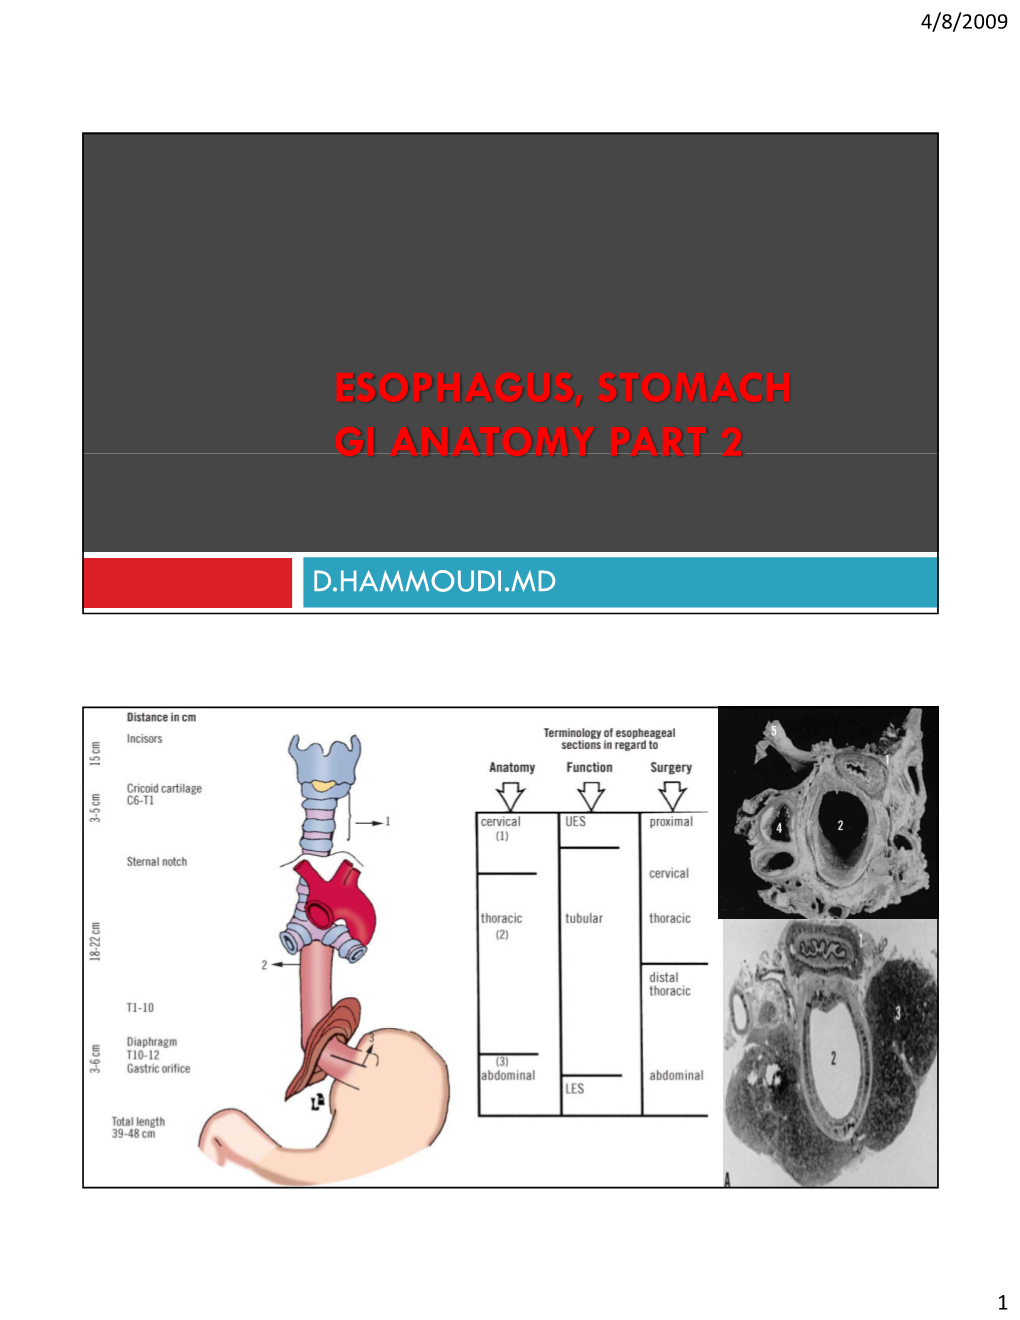 Esophagus, Stomach Gi Anatomy Part 2